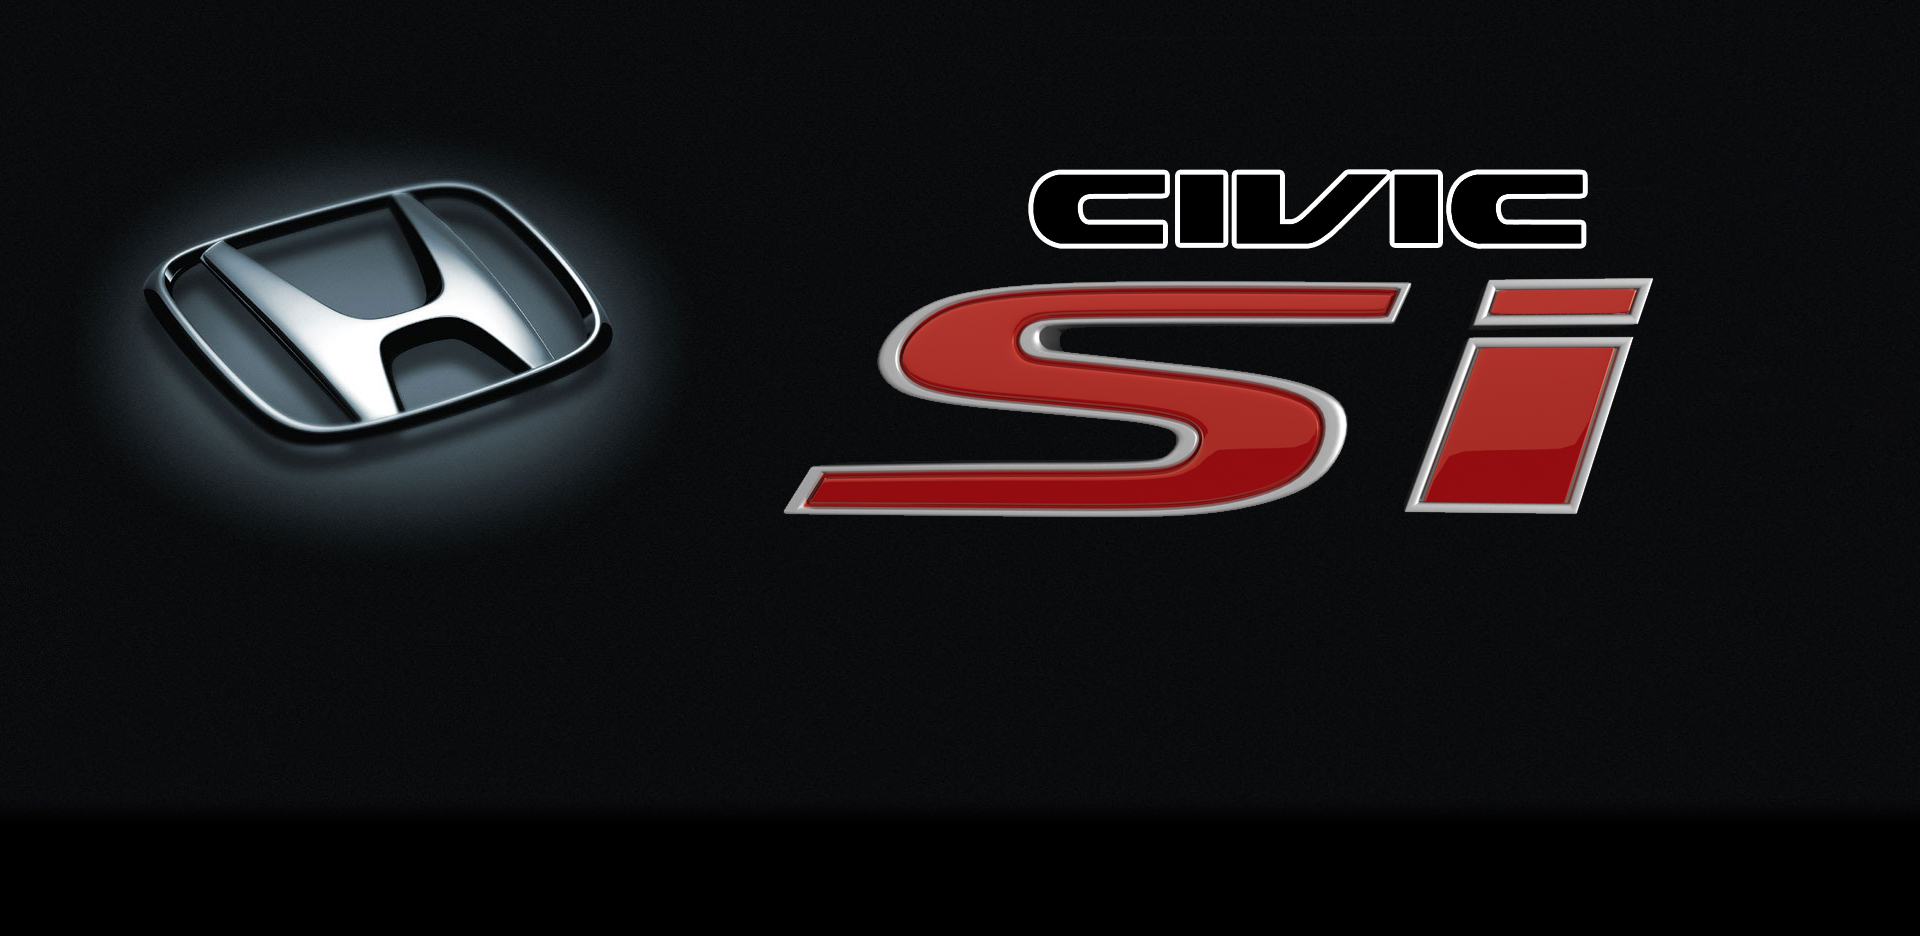 Honda Civic Si Logo Imid Wallpaper